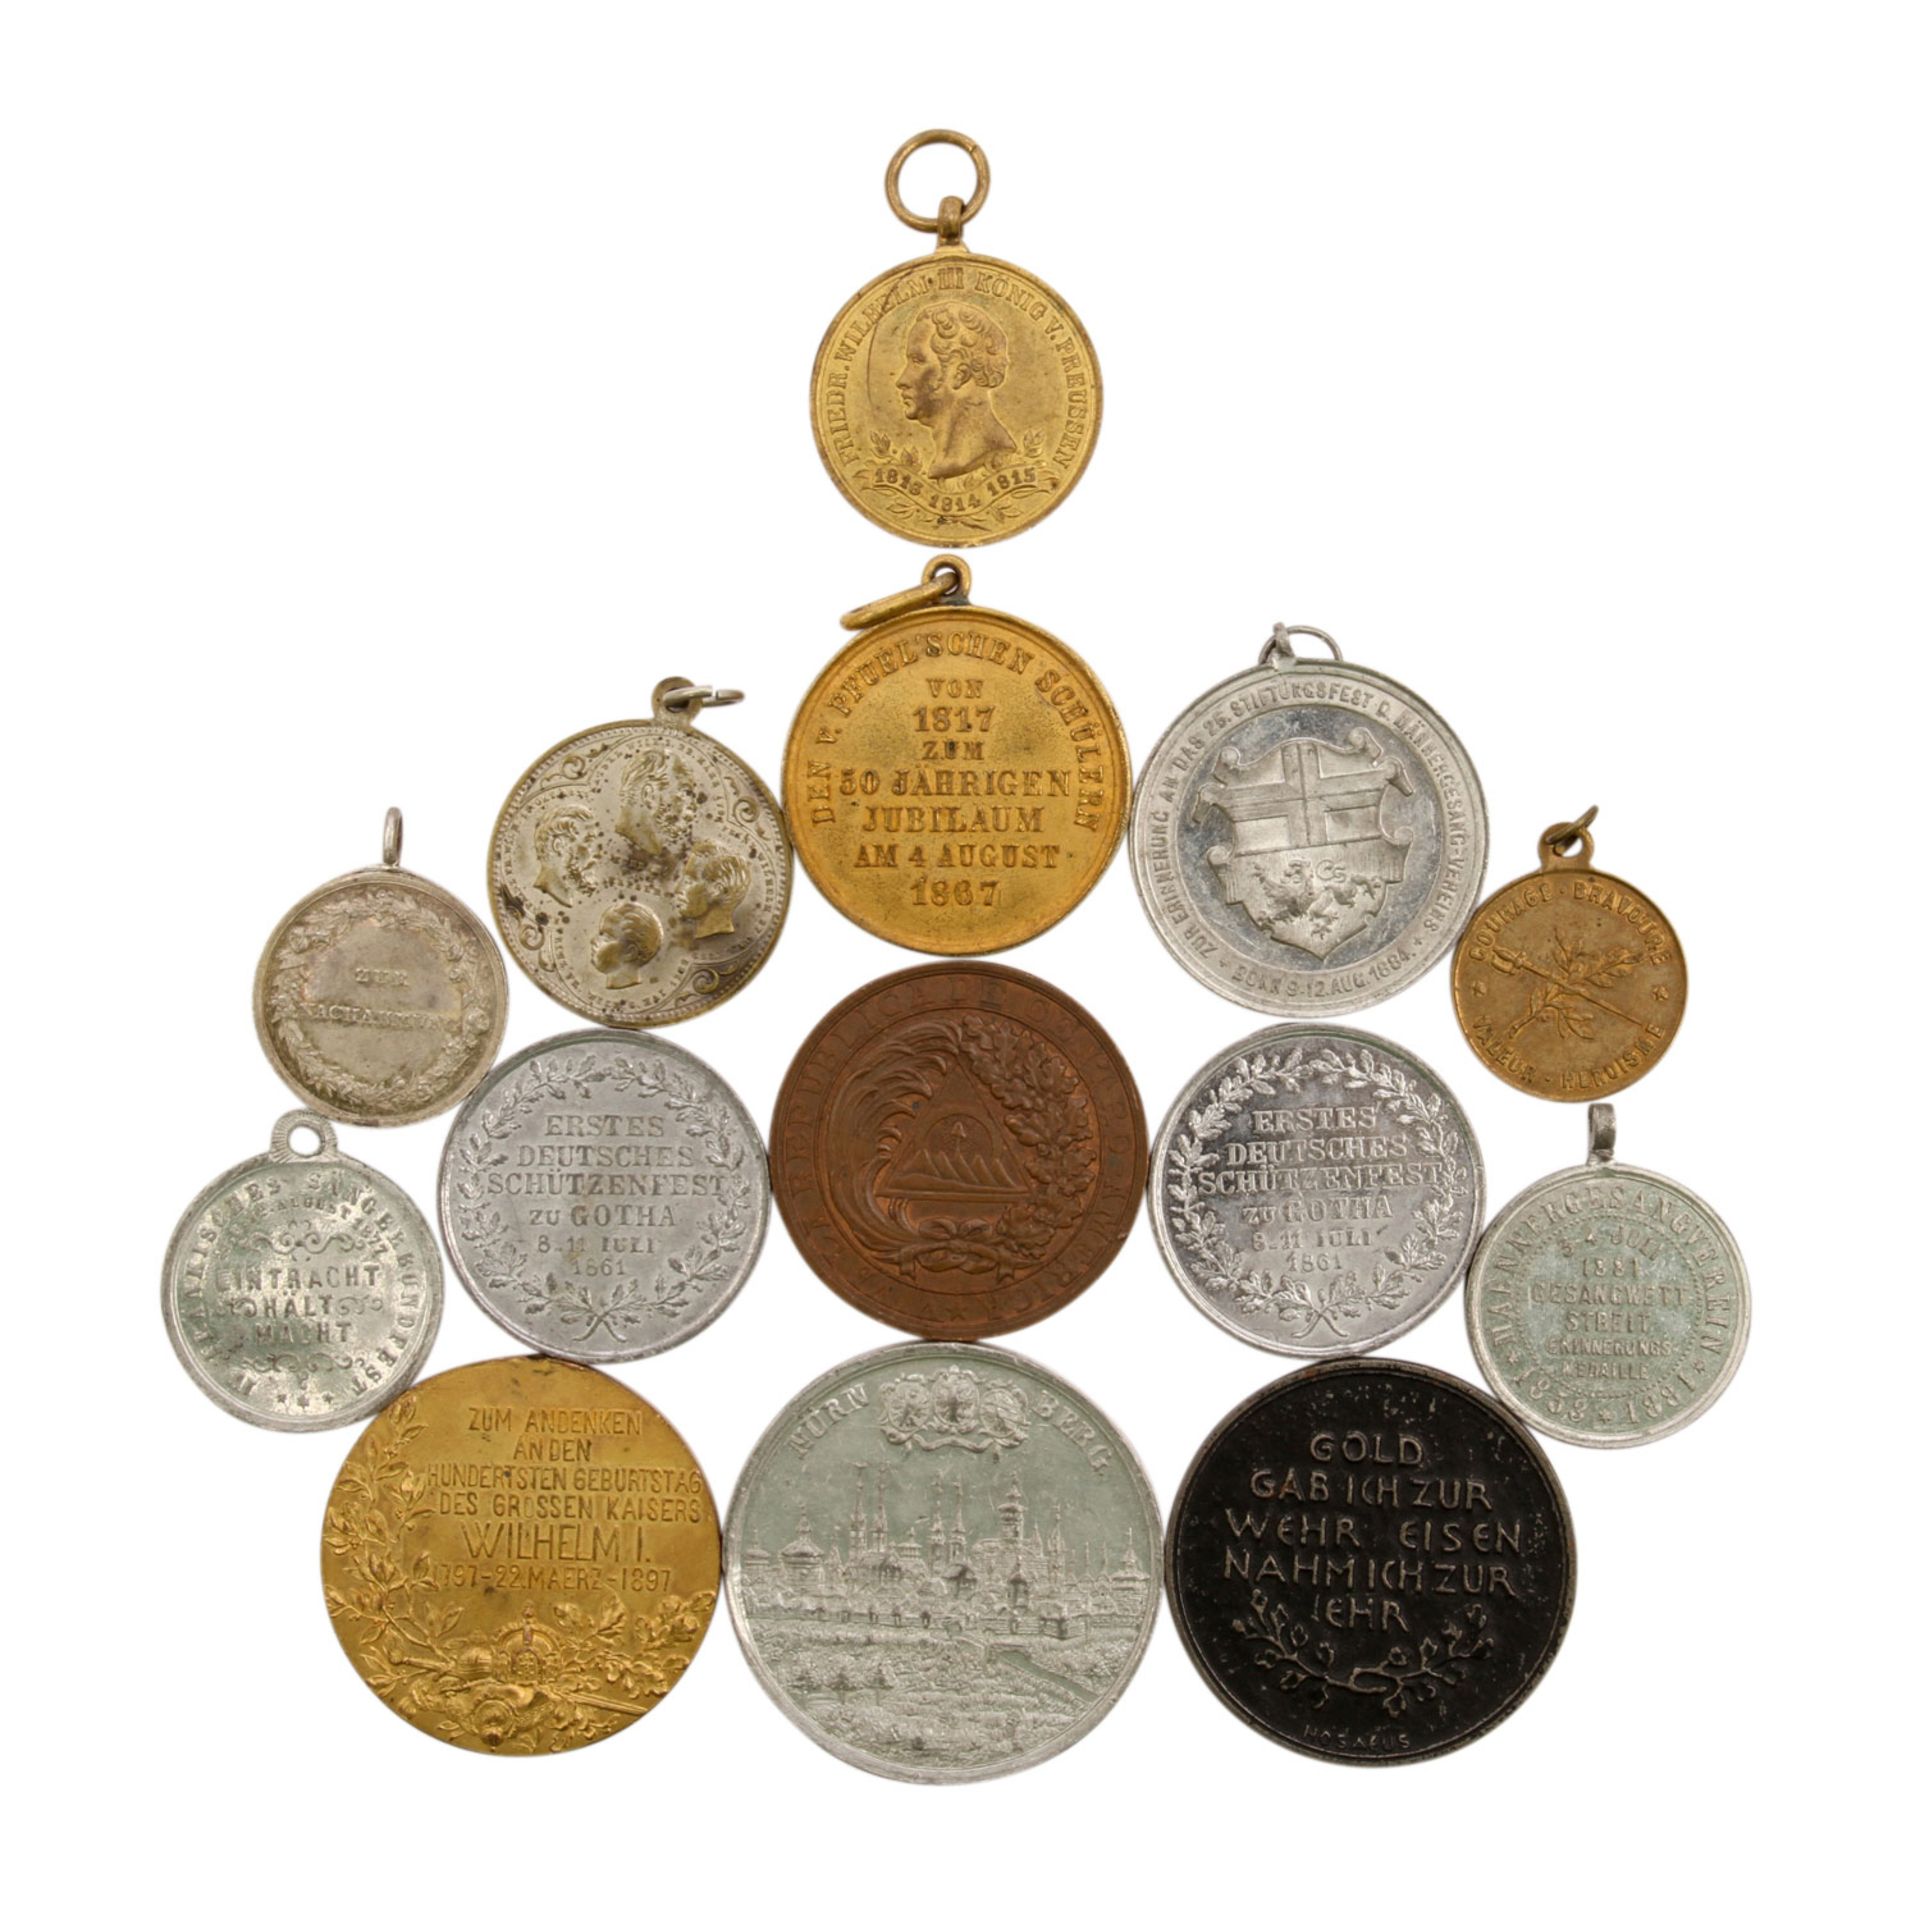 Historische Medaillen, mitunter Schützenmedaillen,Schulmedaillen, u.a. Medaille v. Brandt auf die - Bild 2 aus 2